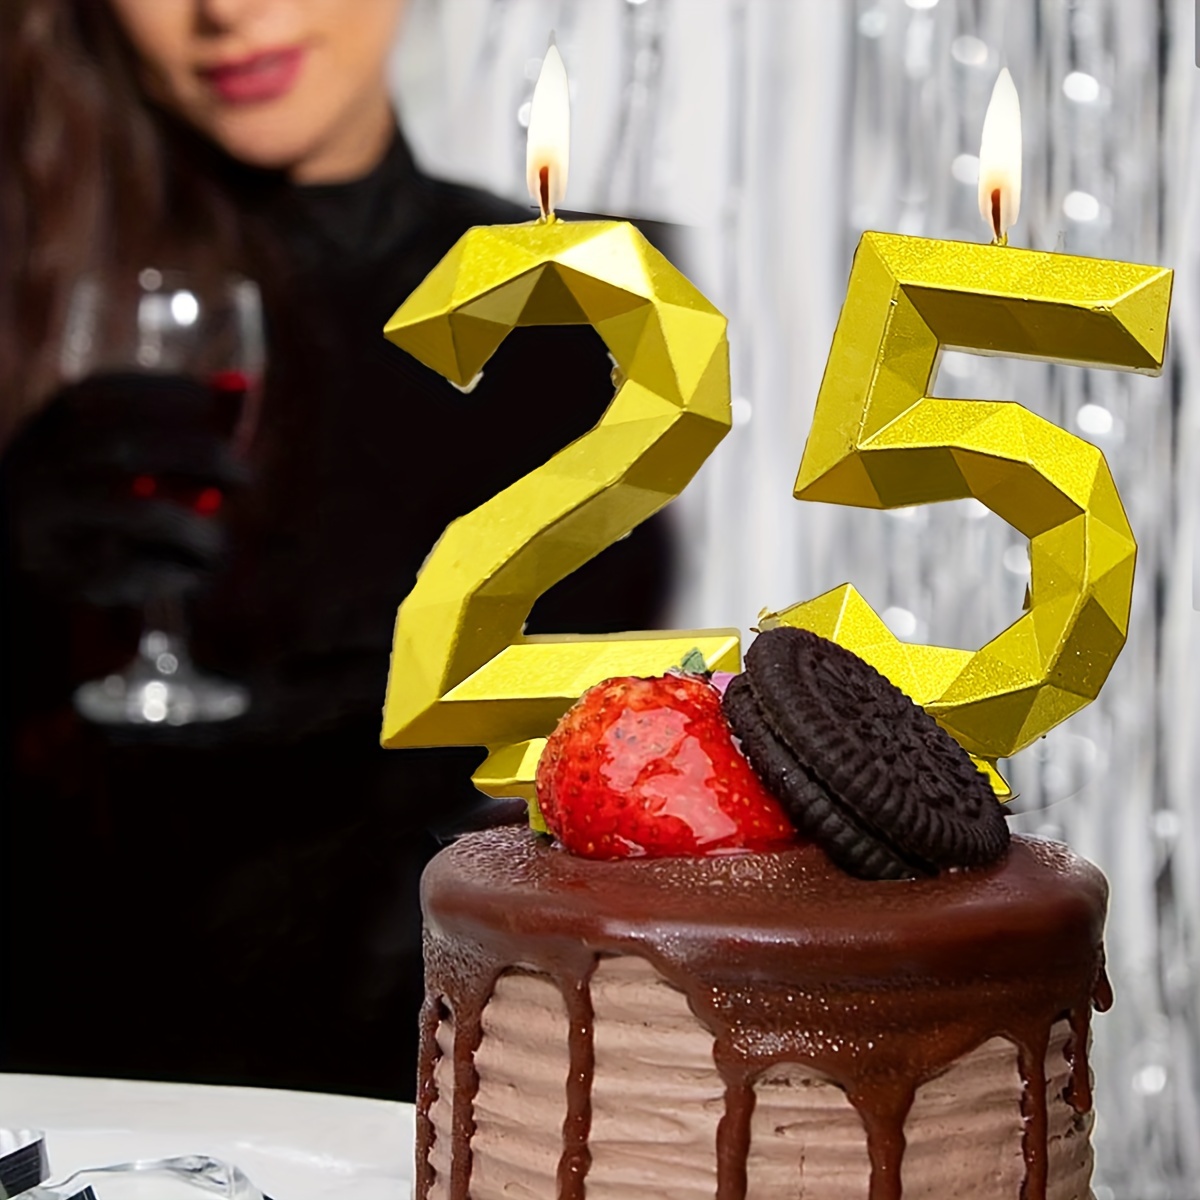 Bougie Numéro Un. Fête D'anniversaire 1 An Sur Le Gâteau, Image De